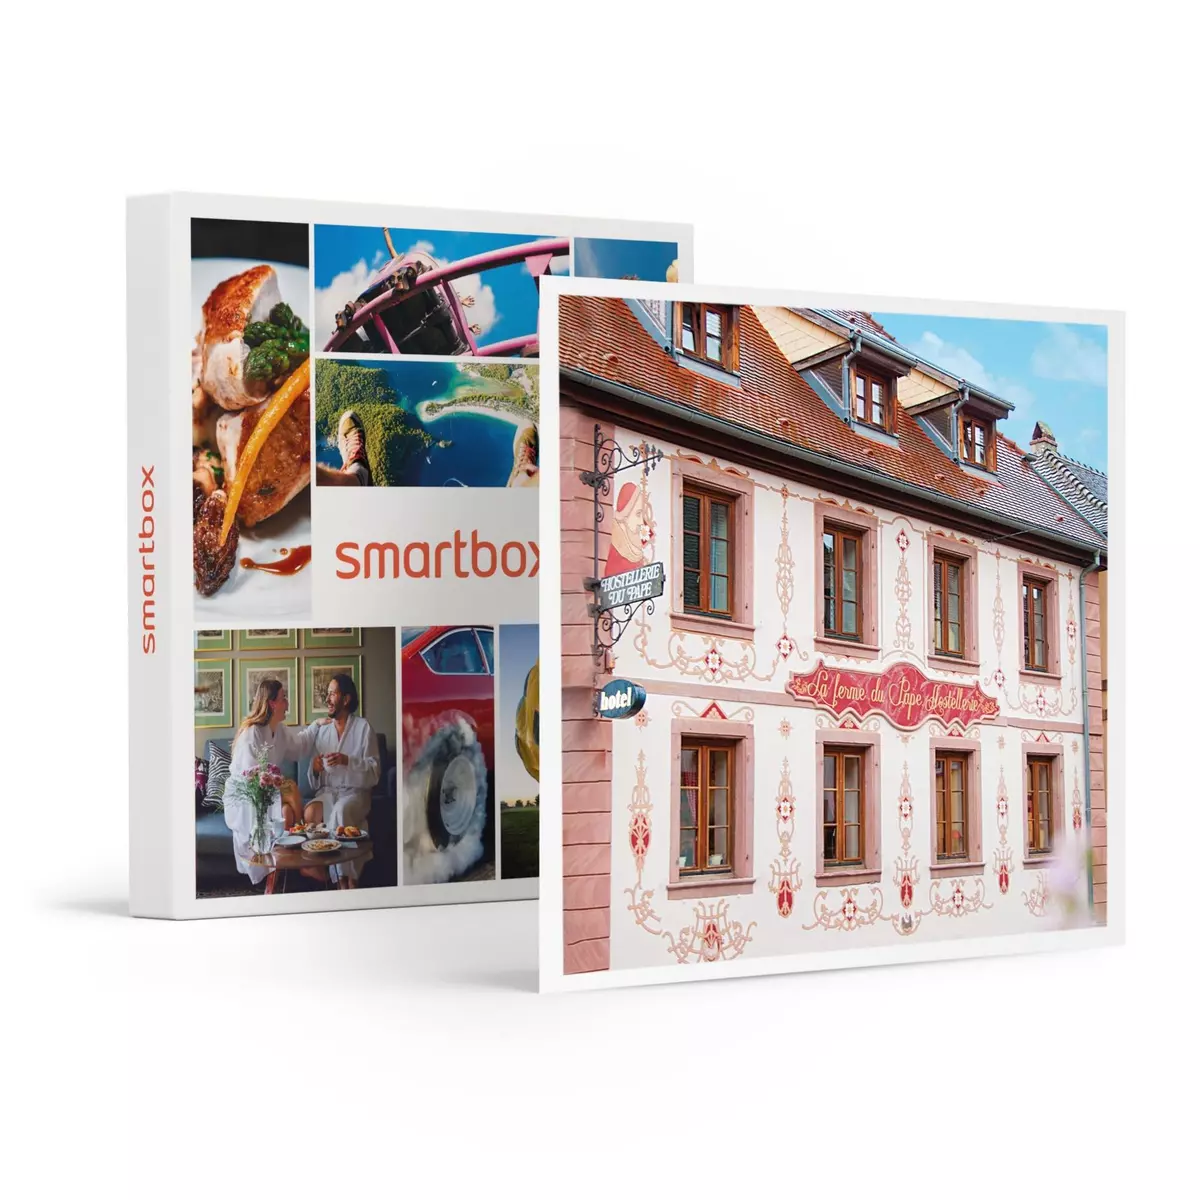 Smartbox 3 jours en hôtel 3* dans un village pittoresque alsacien près de Colmar - Coffret Cadeau Séjour